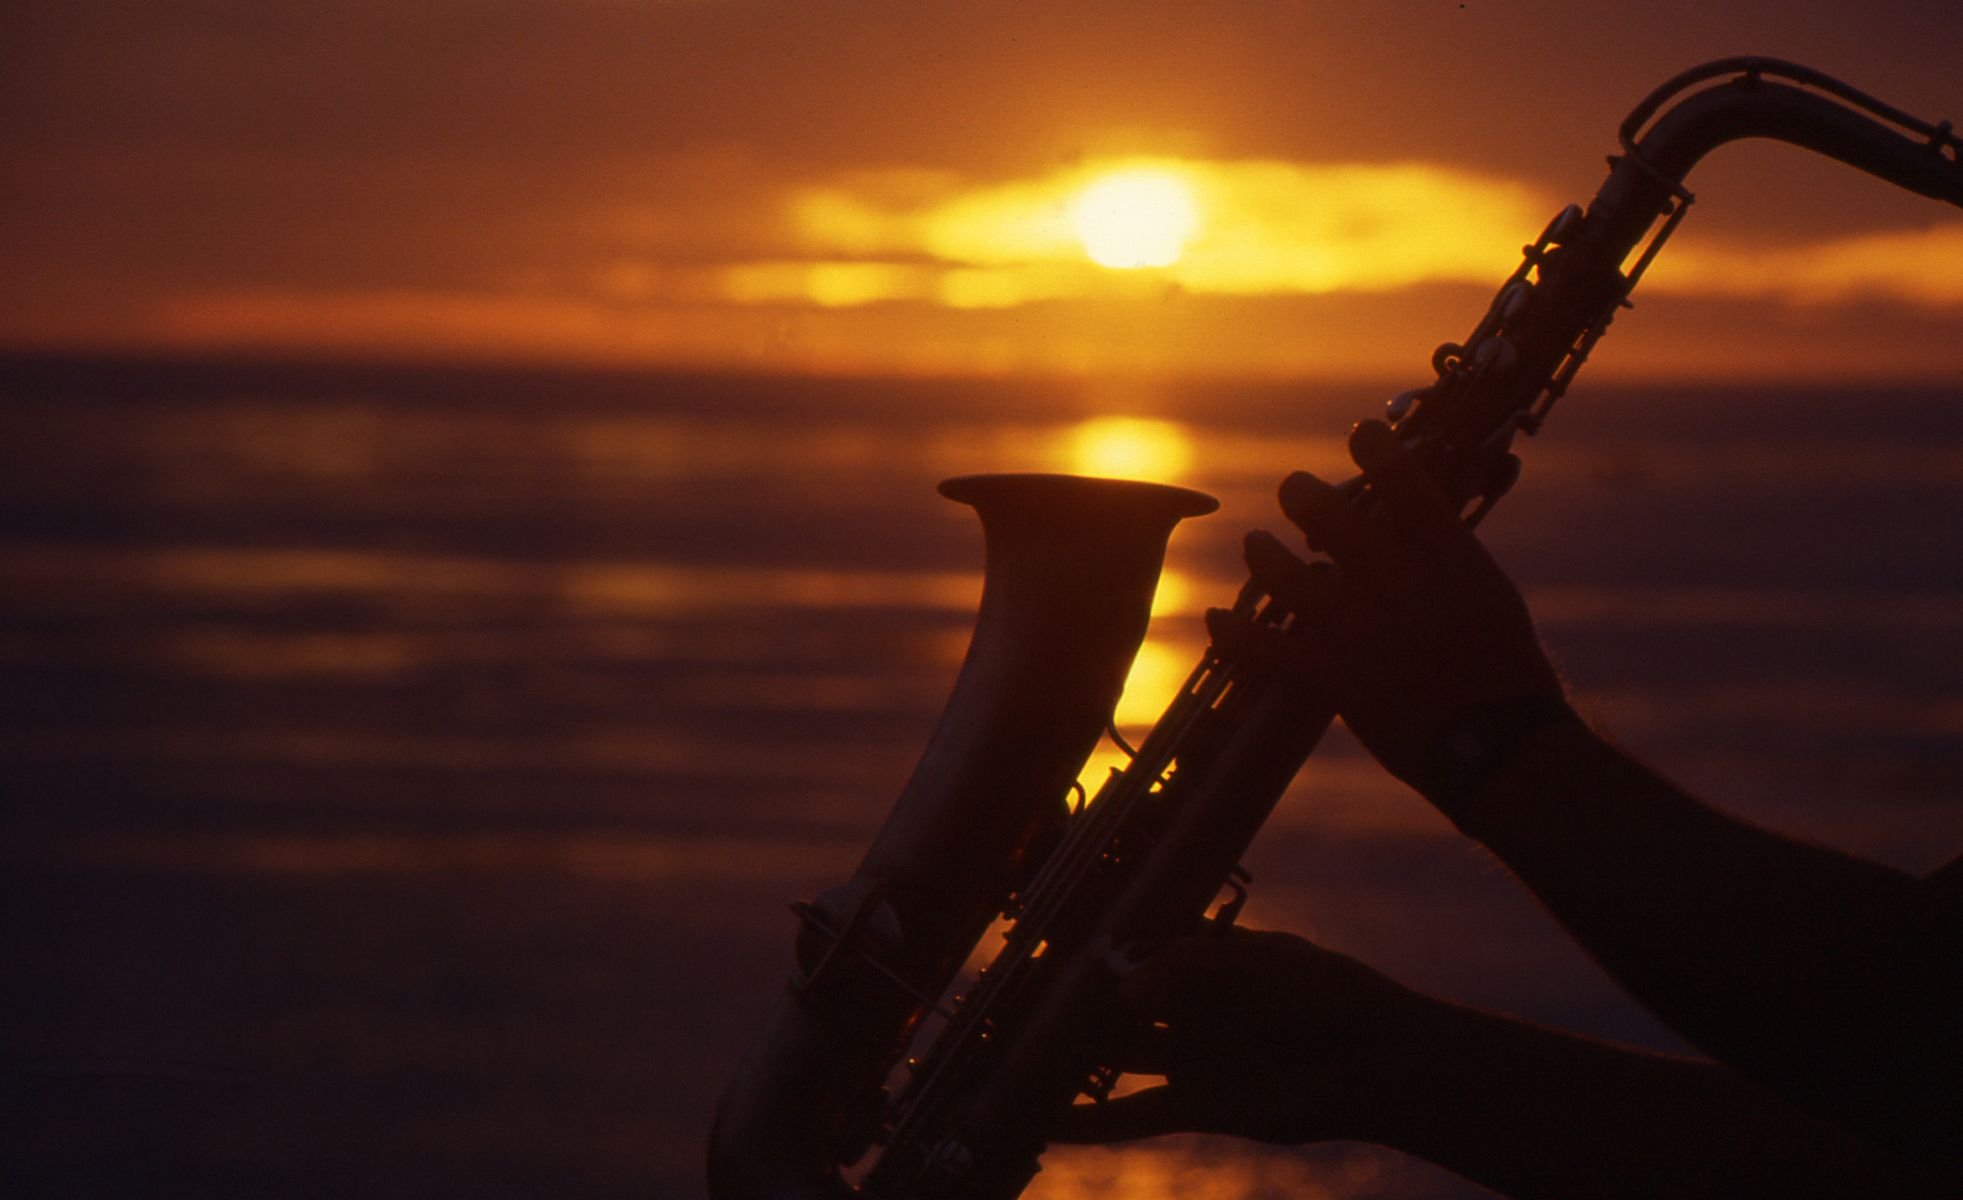 Музыка саксофон в современной обработке. Саксофонист на закате. Романтичный саксофон. Саксофон джаз. Саксофон романтика.